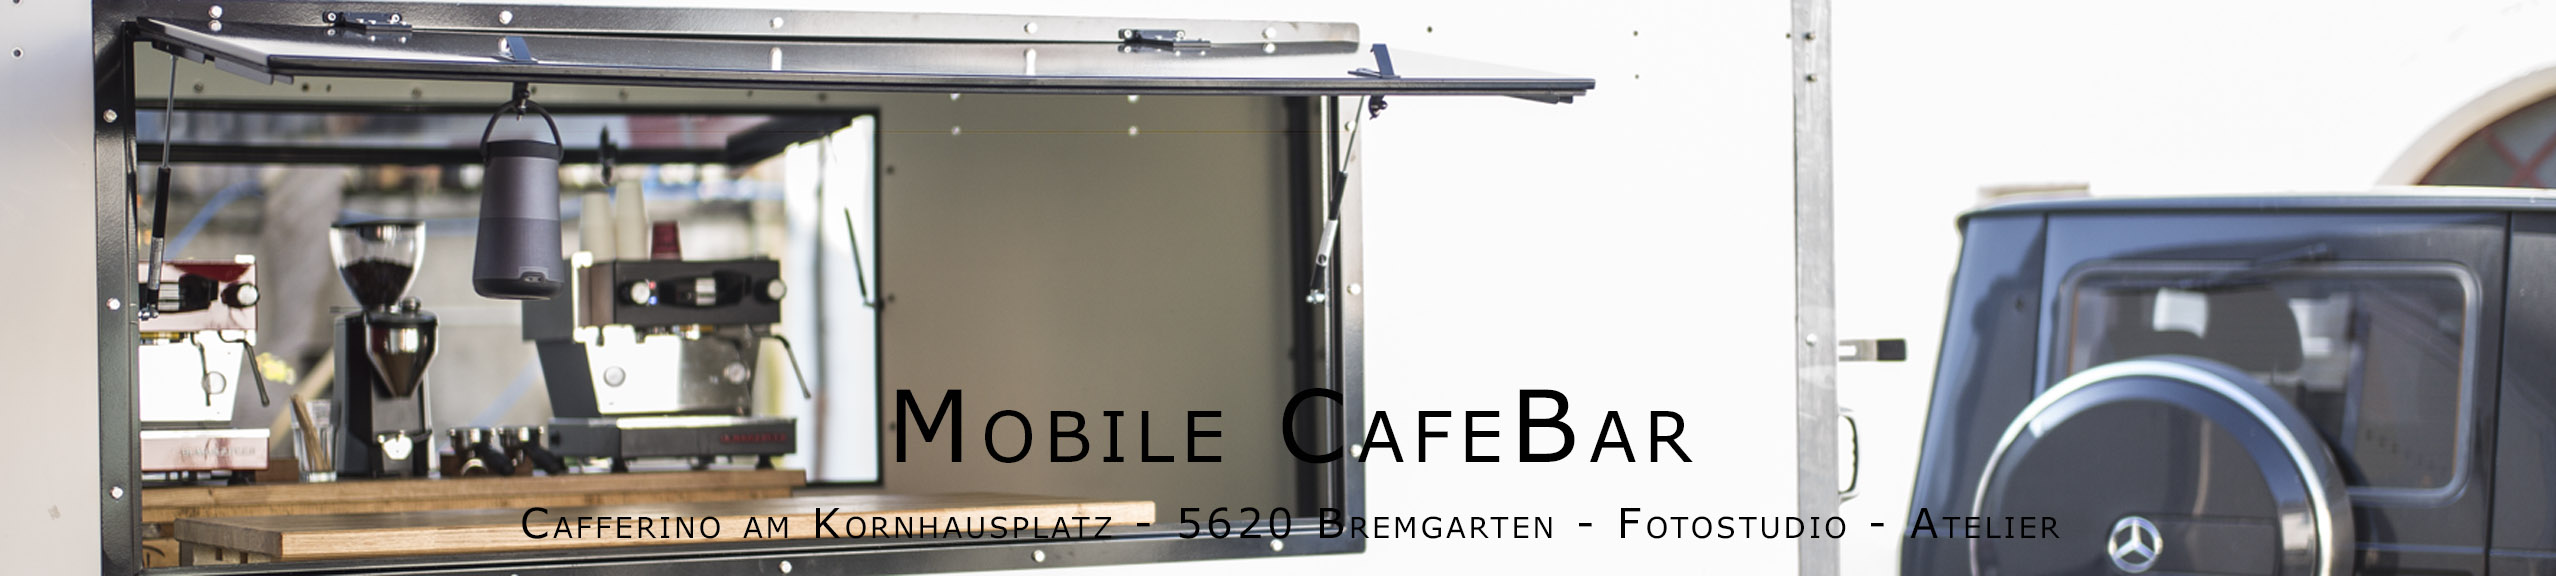 Mobile CafeBar